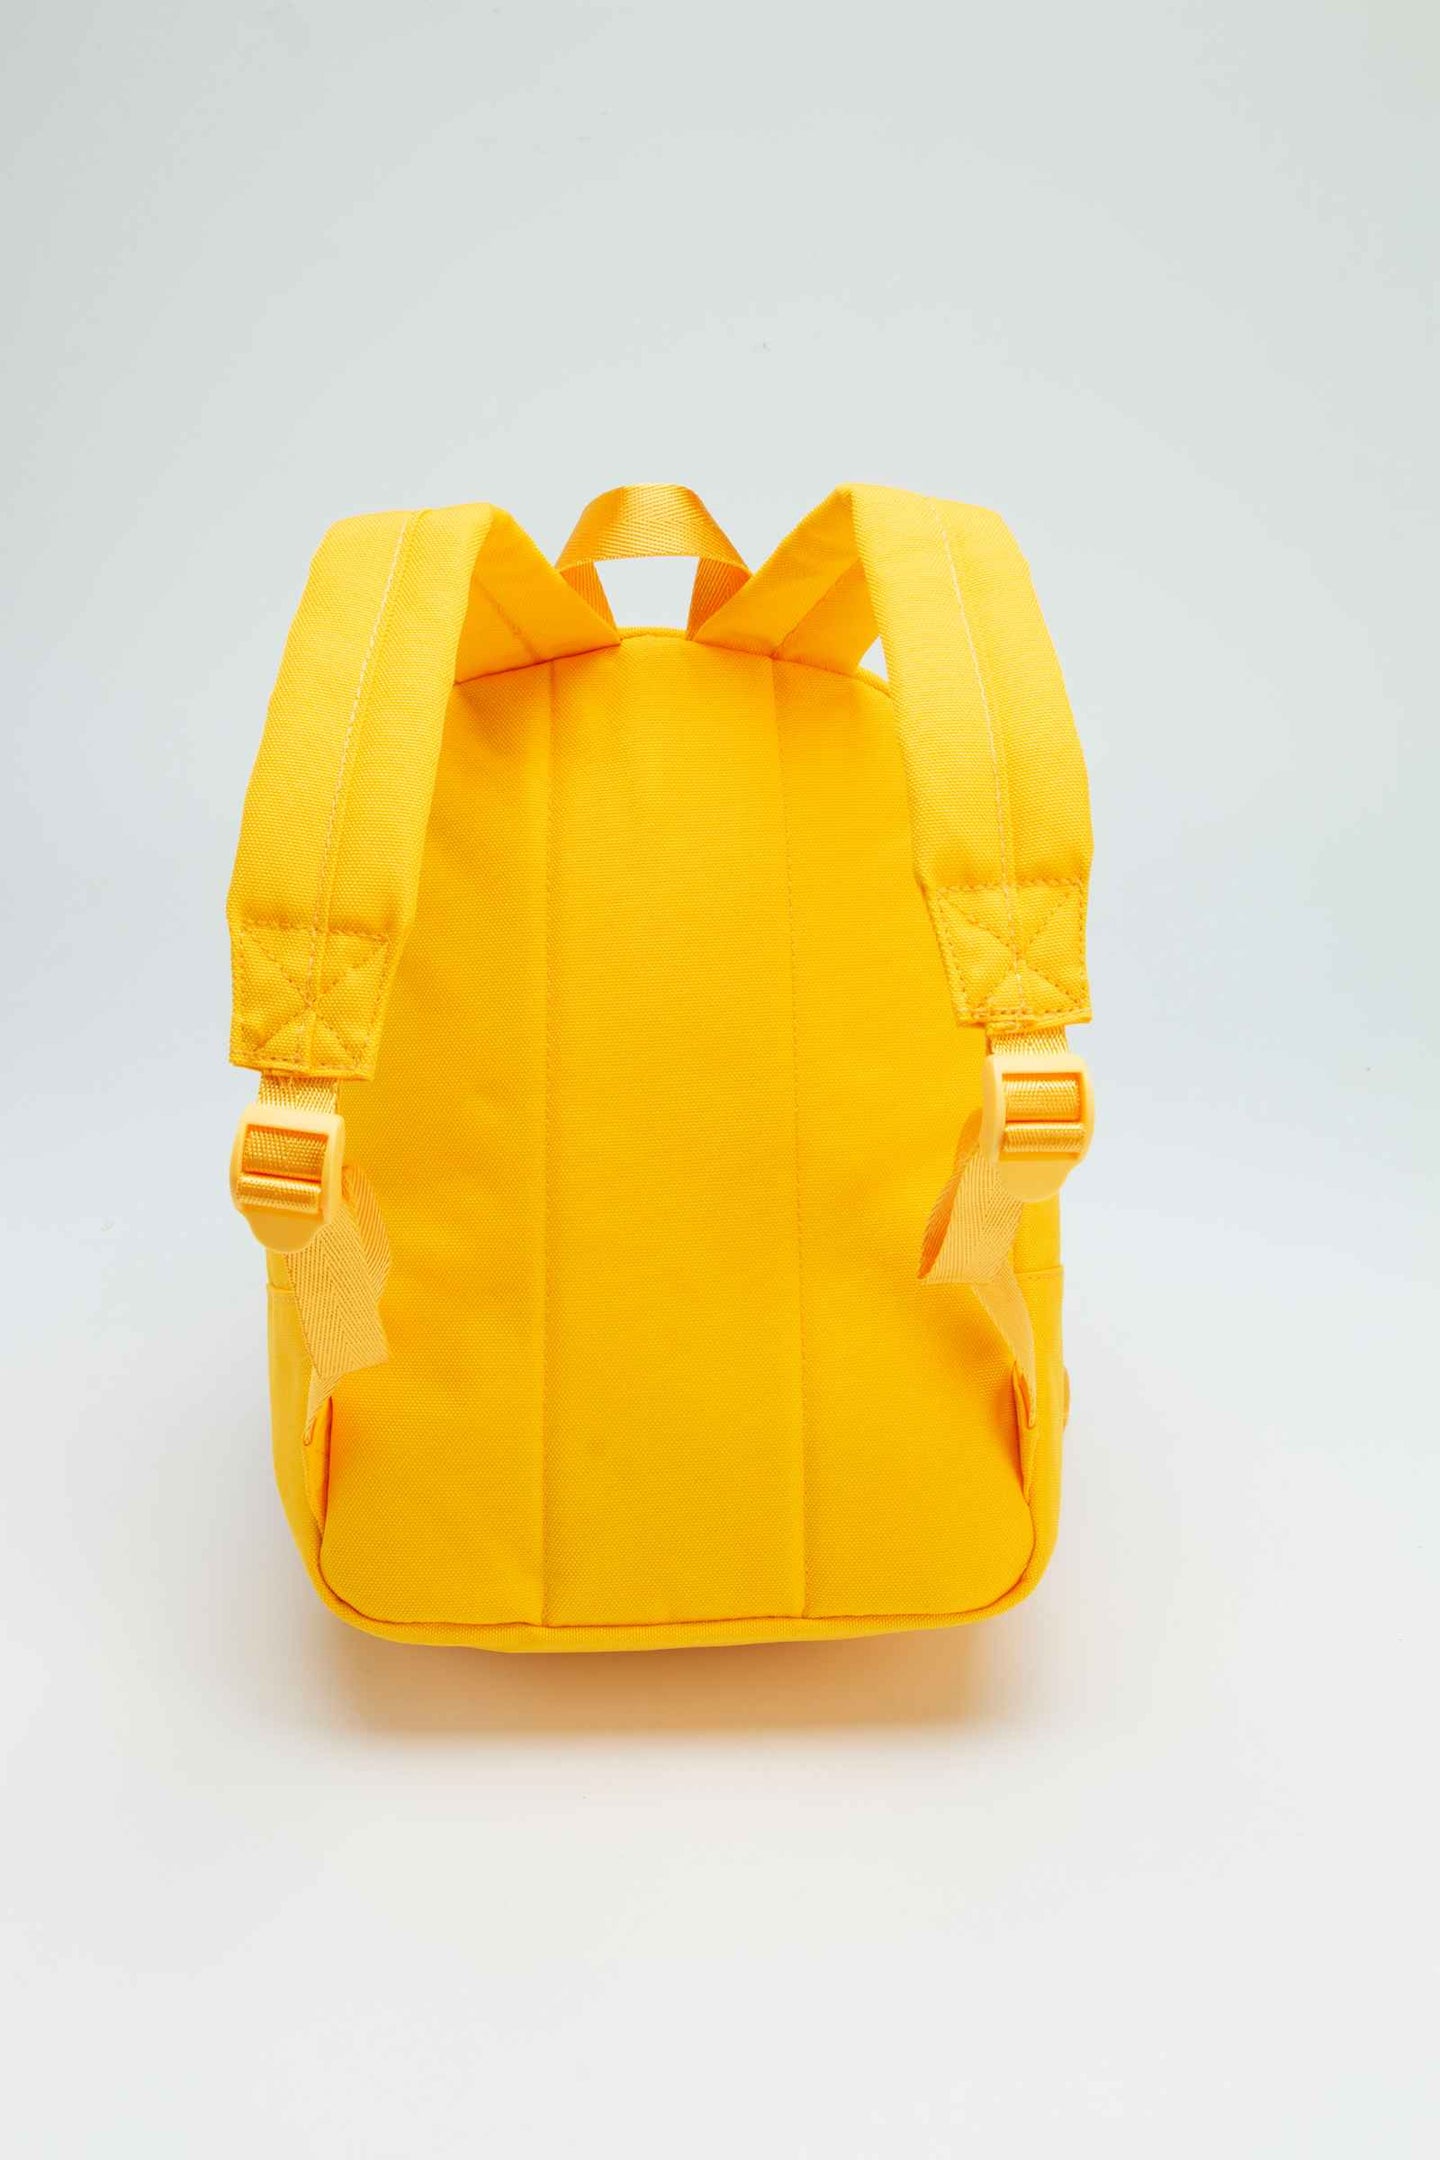 B.Duck Small Backpack Yellow 3D Duckbill Shape For Kids Zipper